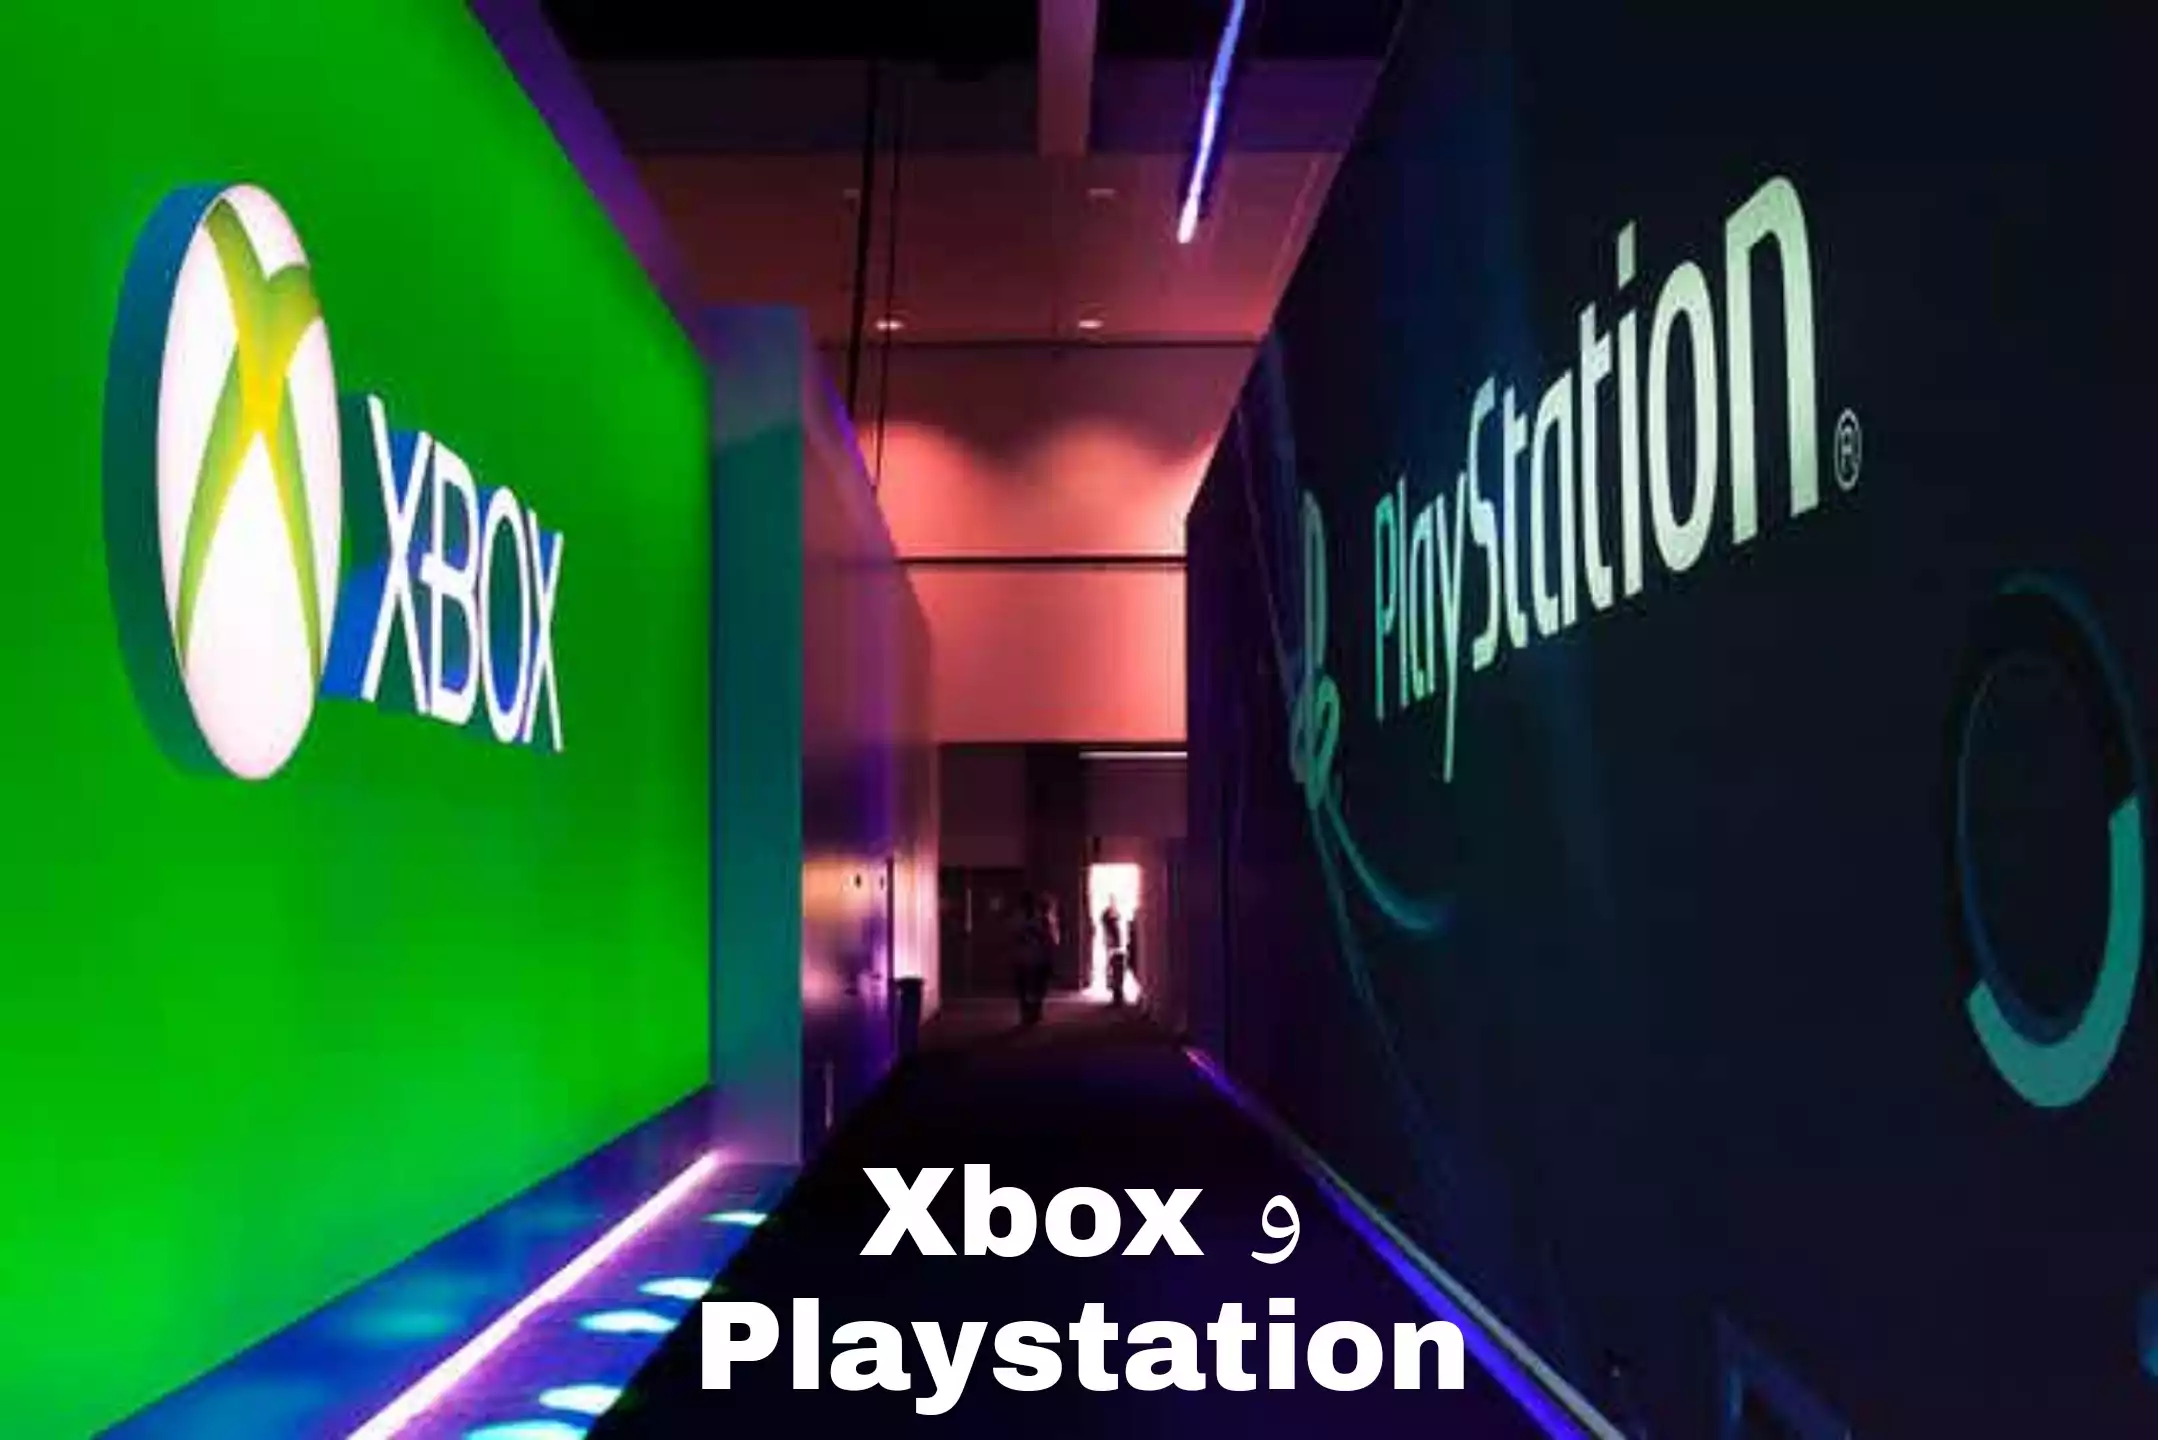 لم تعد الحرب بين Xbox و Playstation تدور حول وحدات التحكم. بل يتعلق الأمر بكسب ولاء العملاء